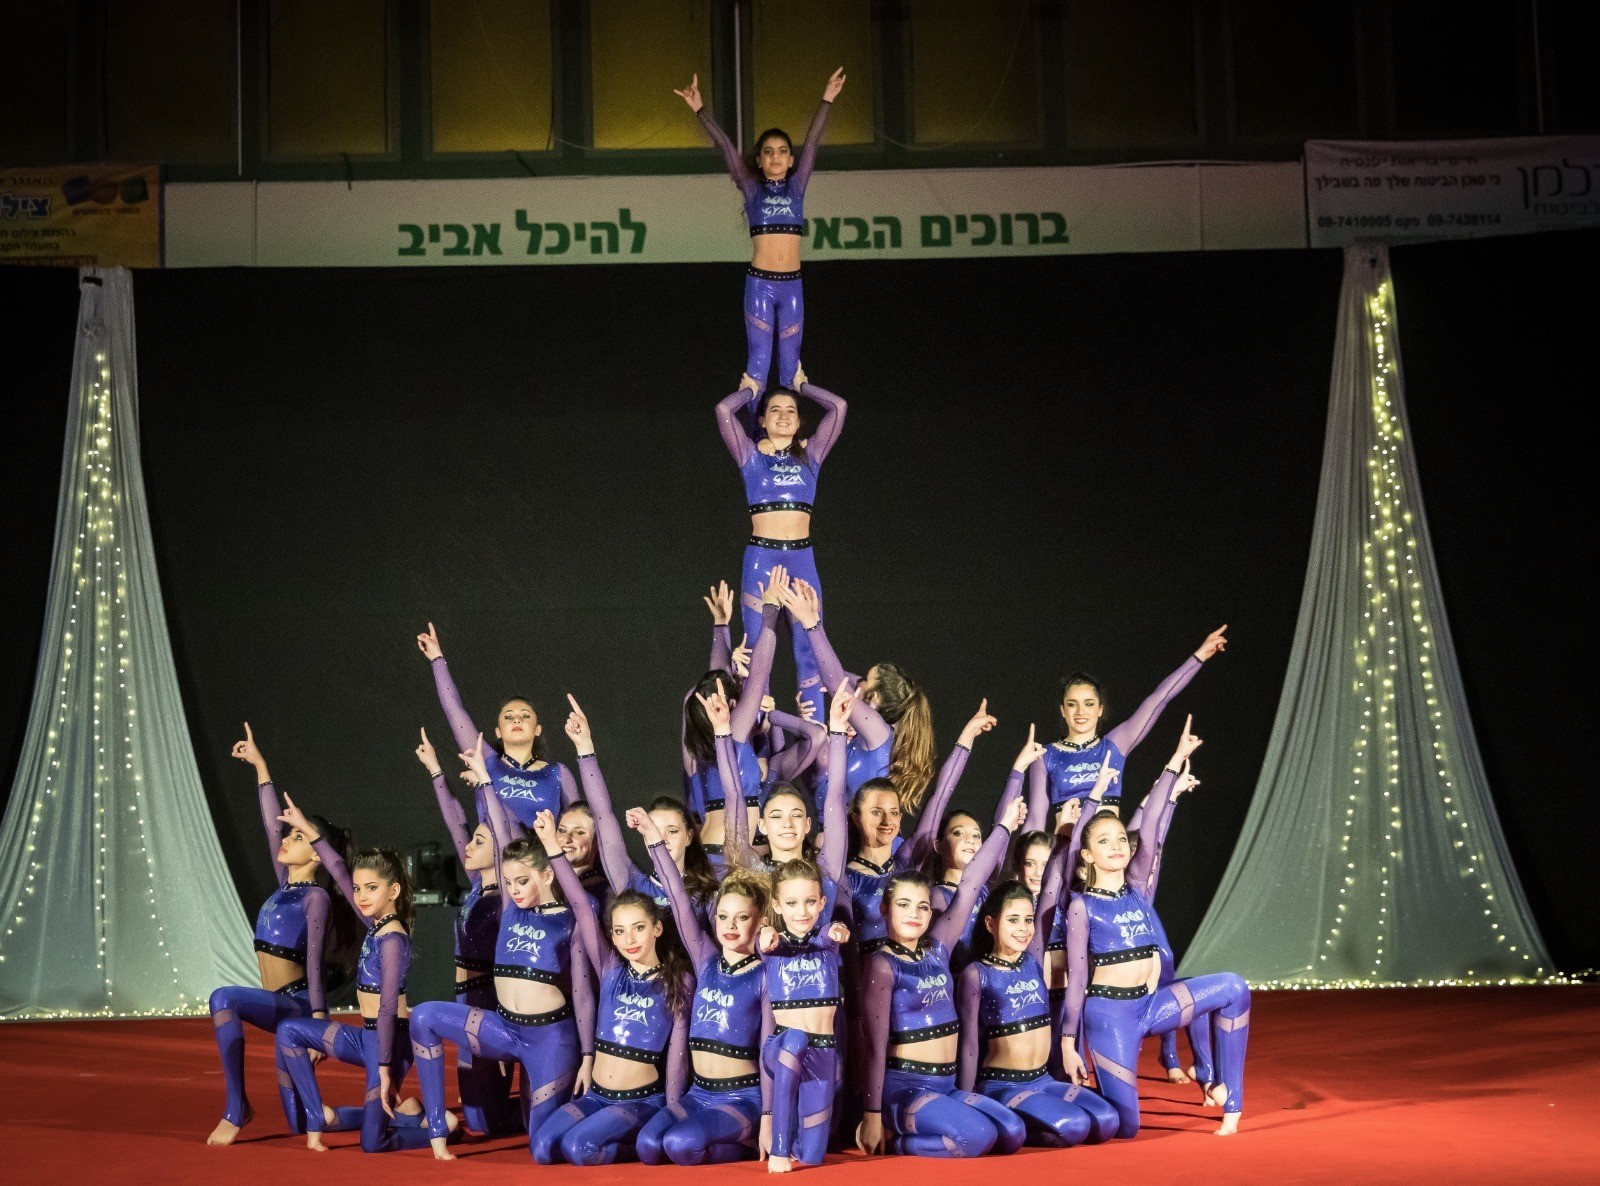 מיטב נבחרות האקרובטיקה בישראל השתתפו במופע הגימנסטרדה שהתקיים ברעננה